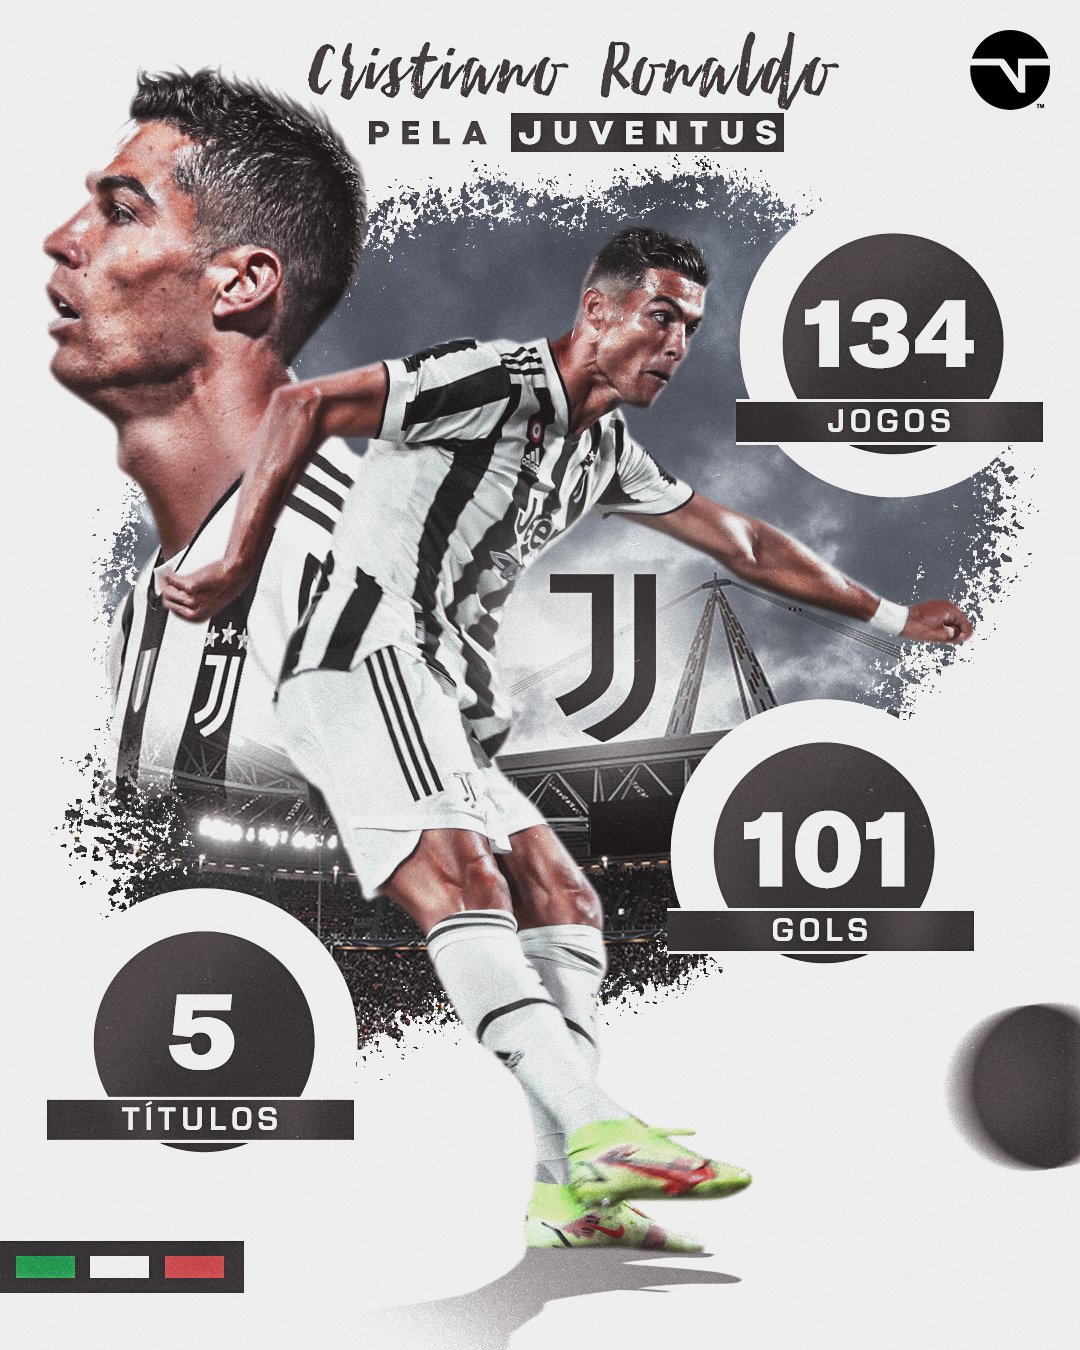 TNT Sports BR on X: Esse são alguns títulos da carreira de Cristiano  Ronaldo, que vai em busca do seu primeiro com a Juventus! Será que essa  coleção vai aumentar?  /